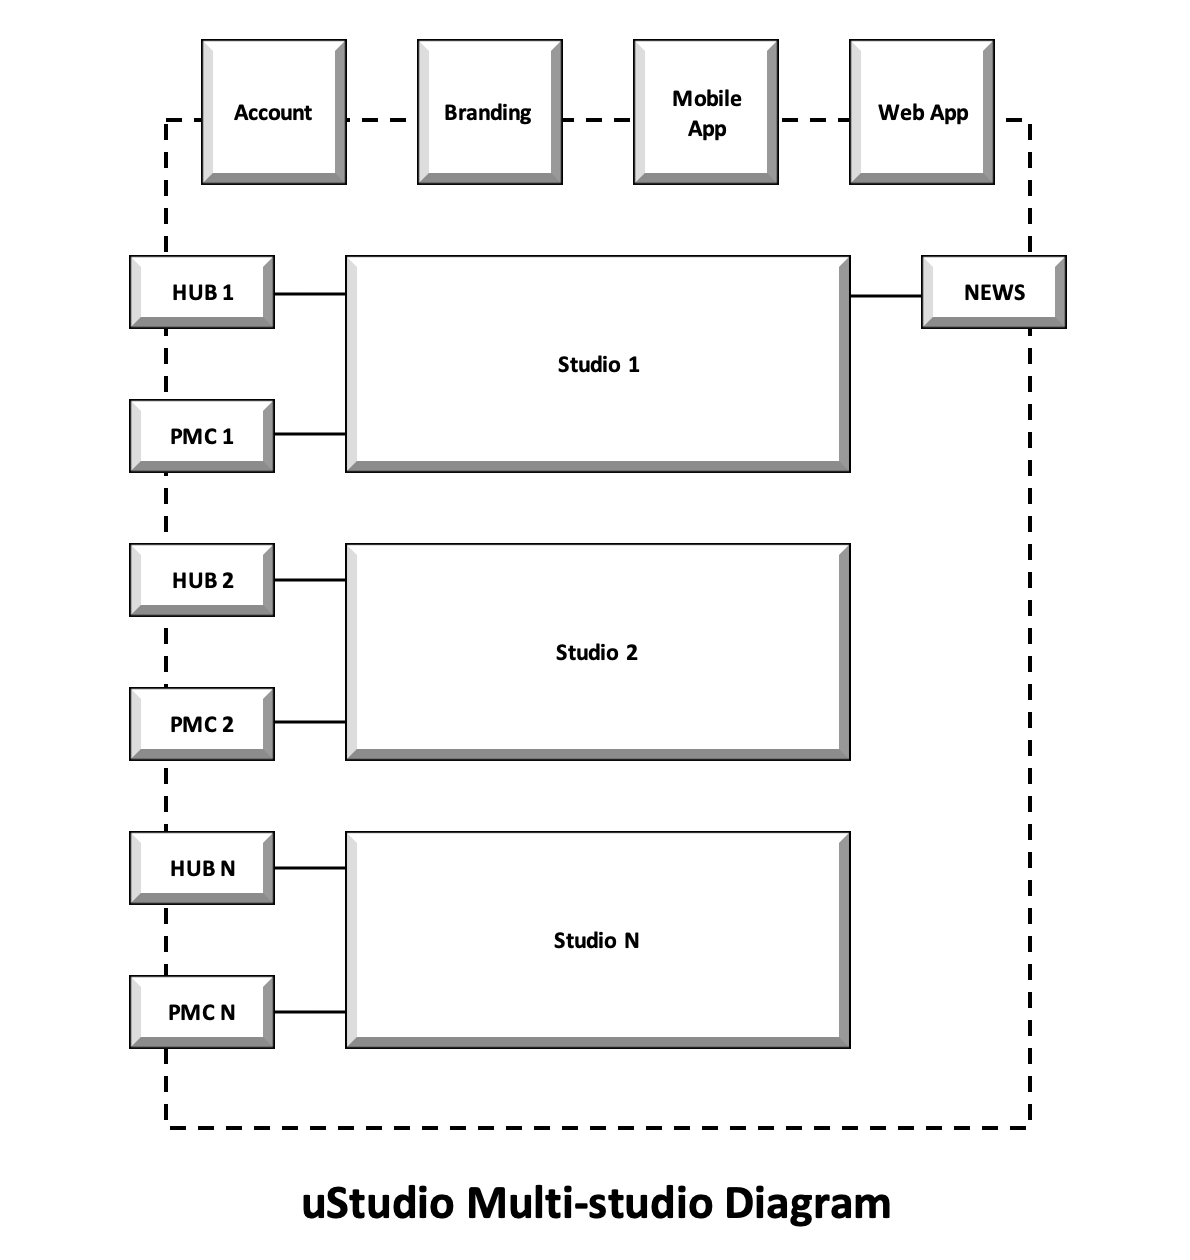 ustudio_multi-studio_diagram.png